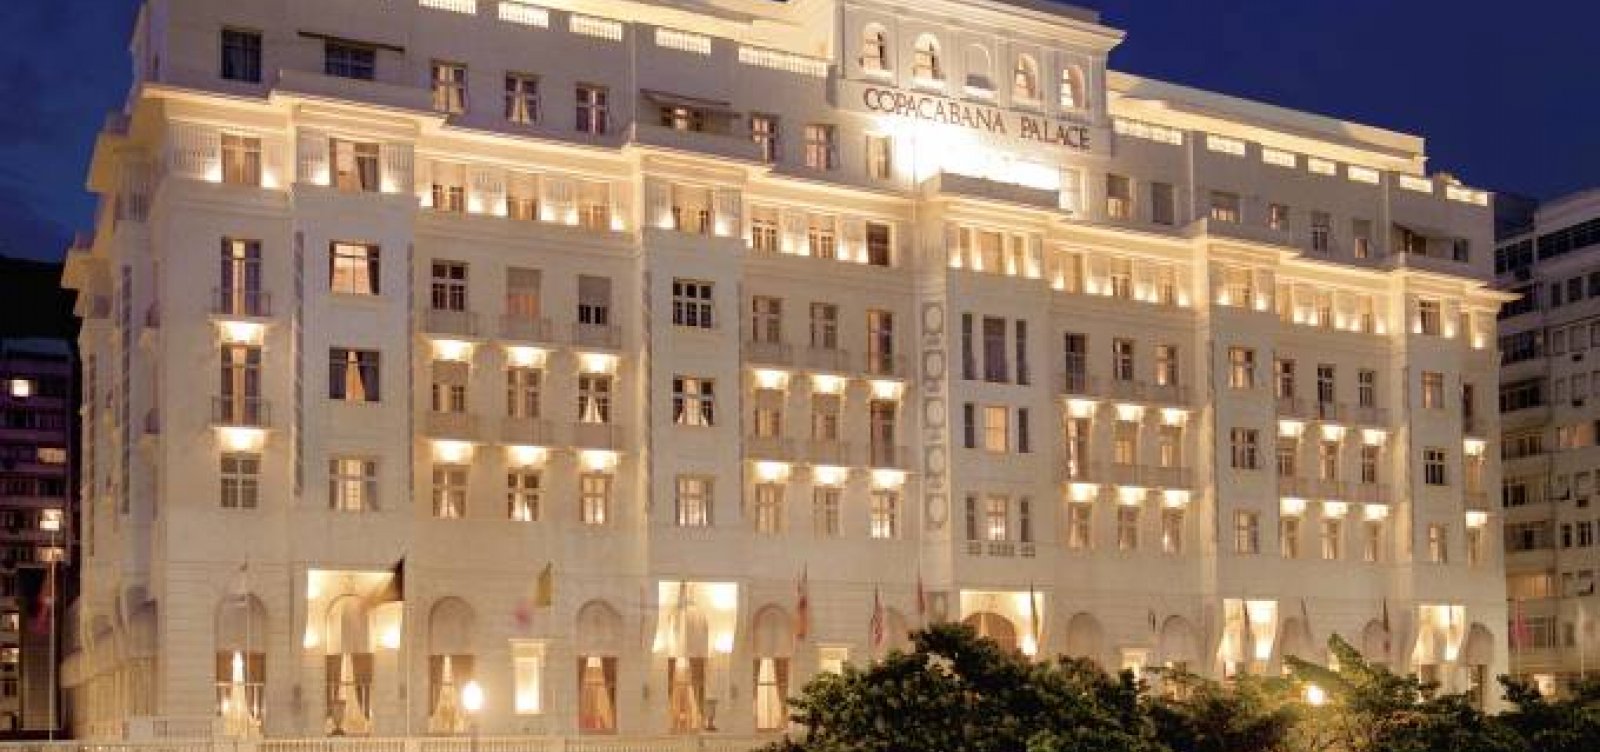 Após festa para 500 pessoas, Copacabana Palace é multado em R$ 15 mil 